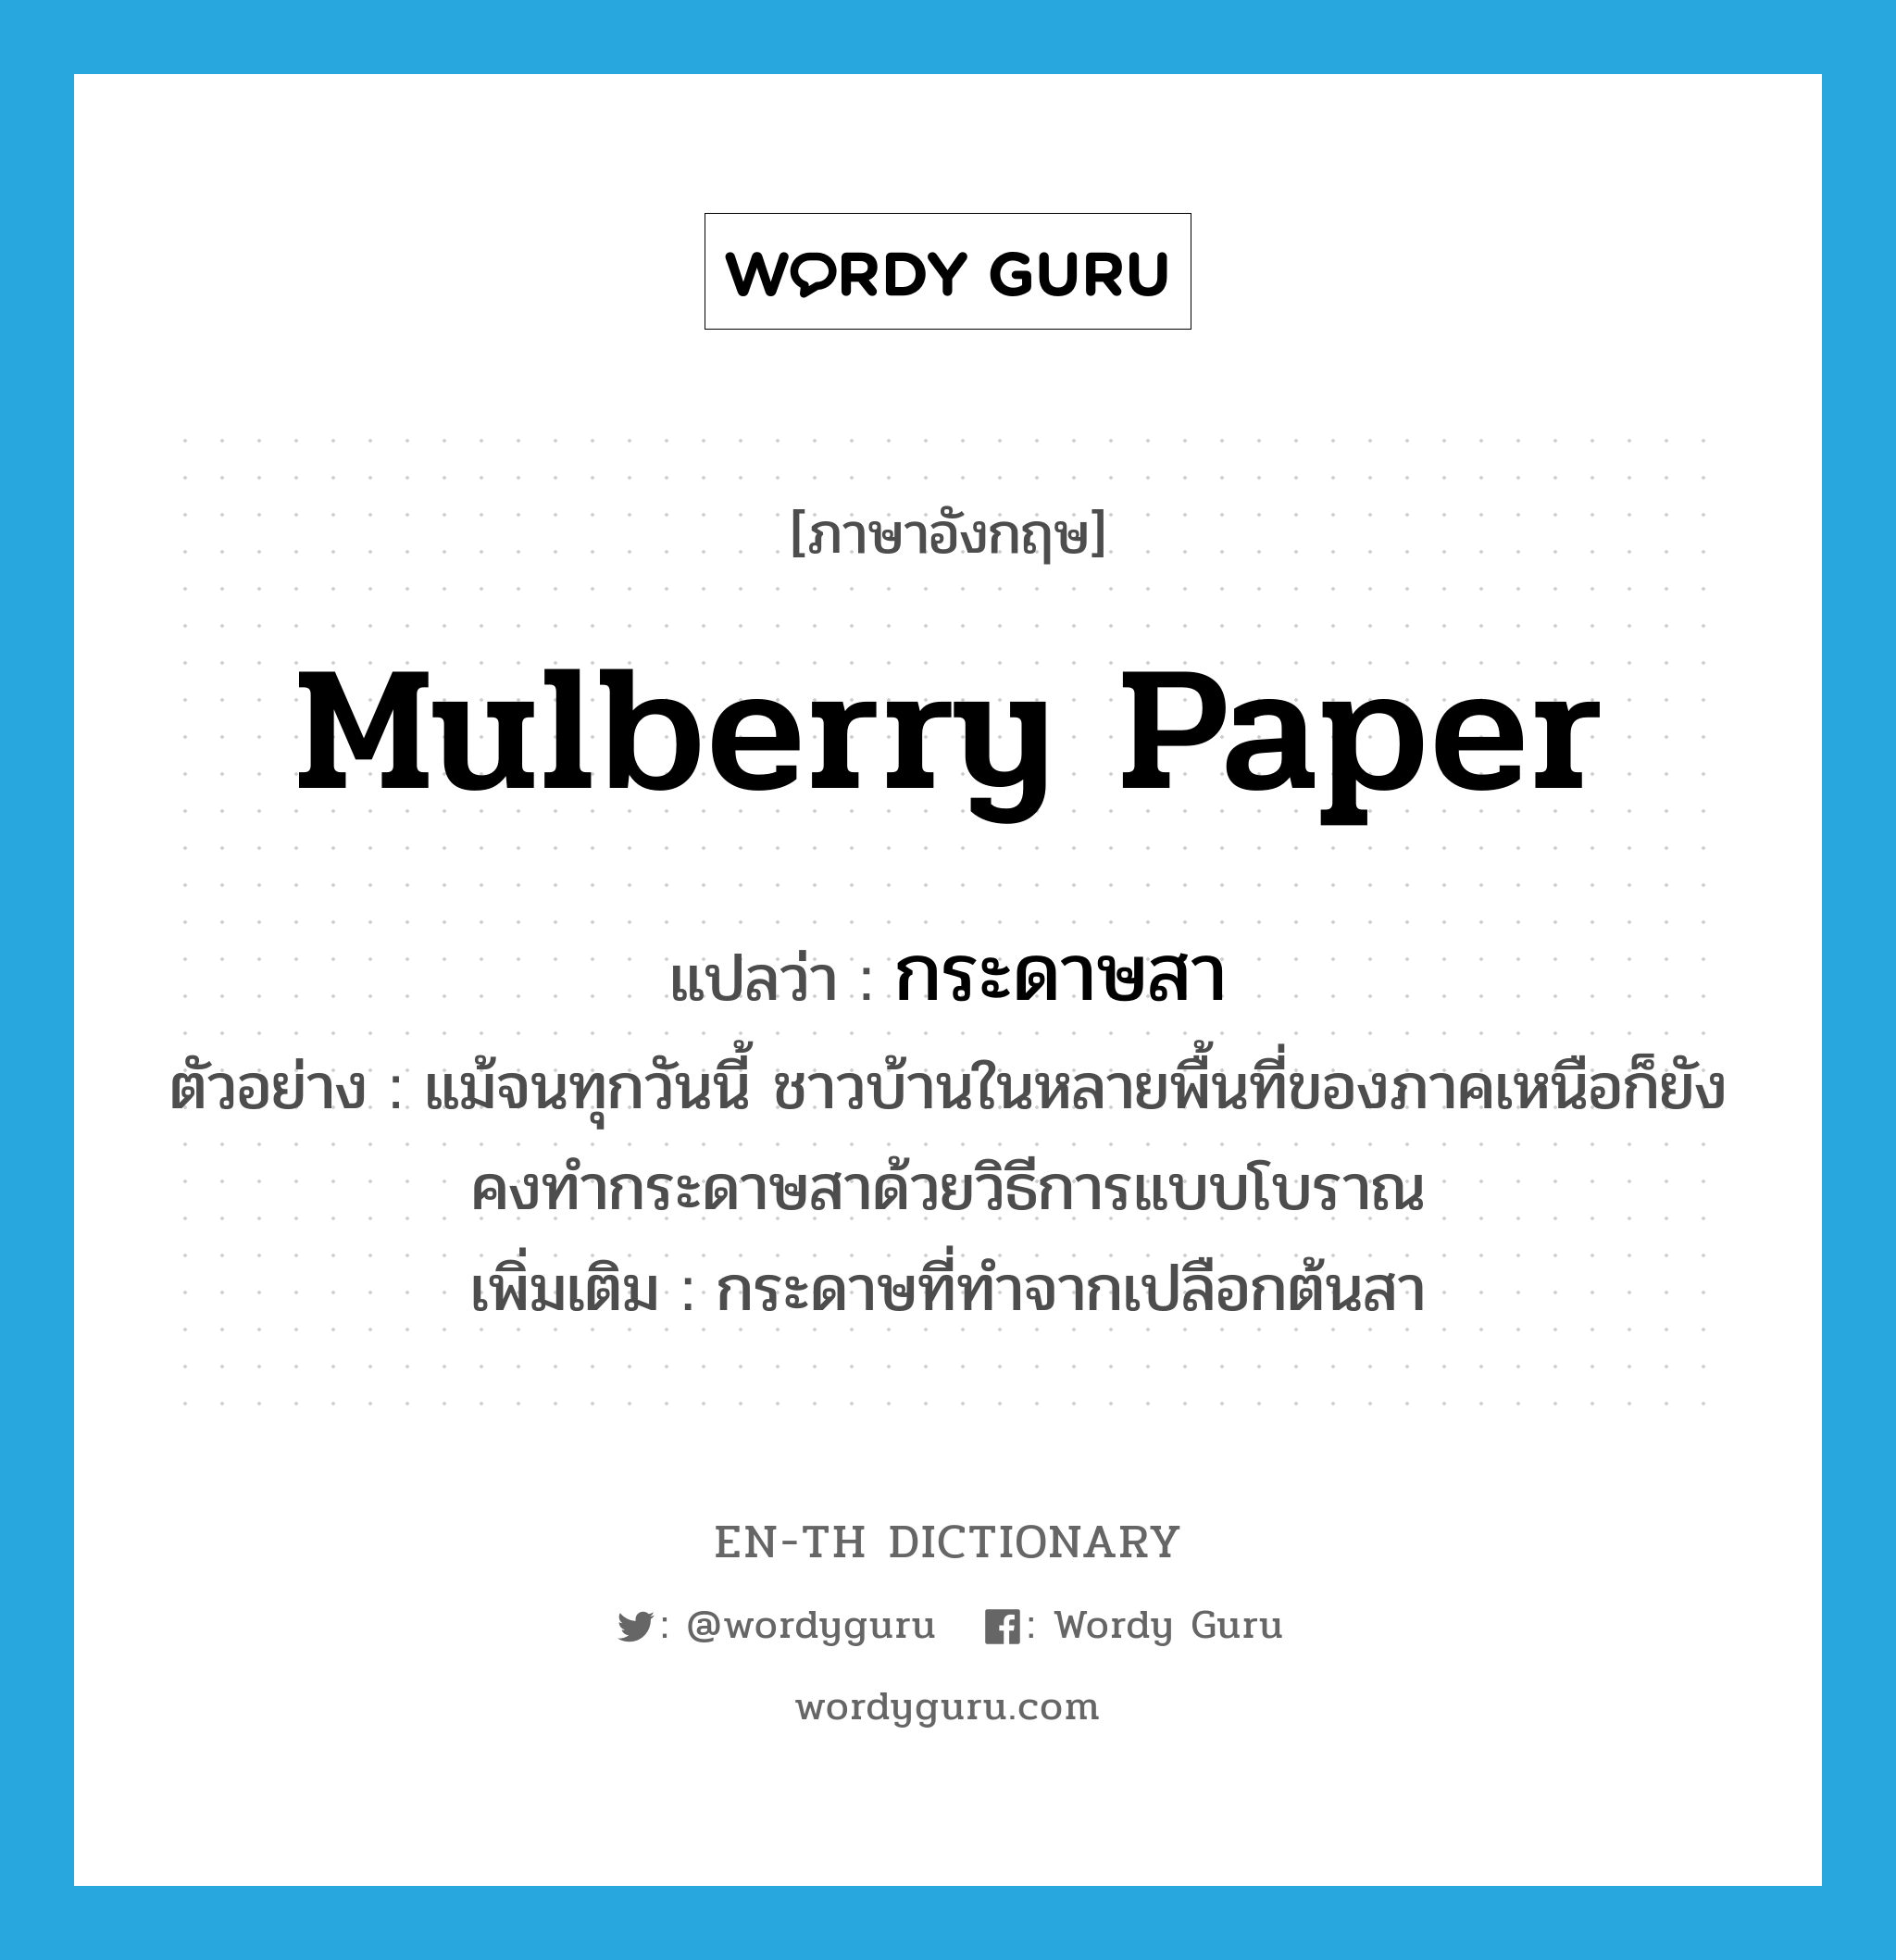 กระดาษสา ภาษาอังกฤษ?, คำศัพท์ภาษาอังกฤษ กระดาษสา แปลว่า mulberry paper ประเภท N ตัวอย่าง แม้จนทุกวันนี้ ชาวบ้านในหลายพื้นที่ของภาคเหนือก็ยังคงทำกระดาษสาด้วยวิธีการแบบโบราณ เพิ่มเติม กระดาษที่ทำจากเปลือกต้นสา หมวด N